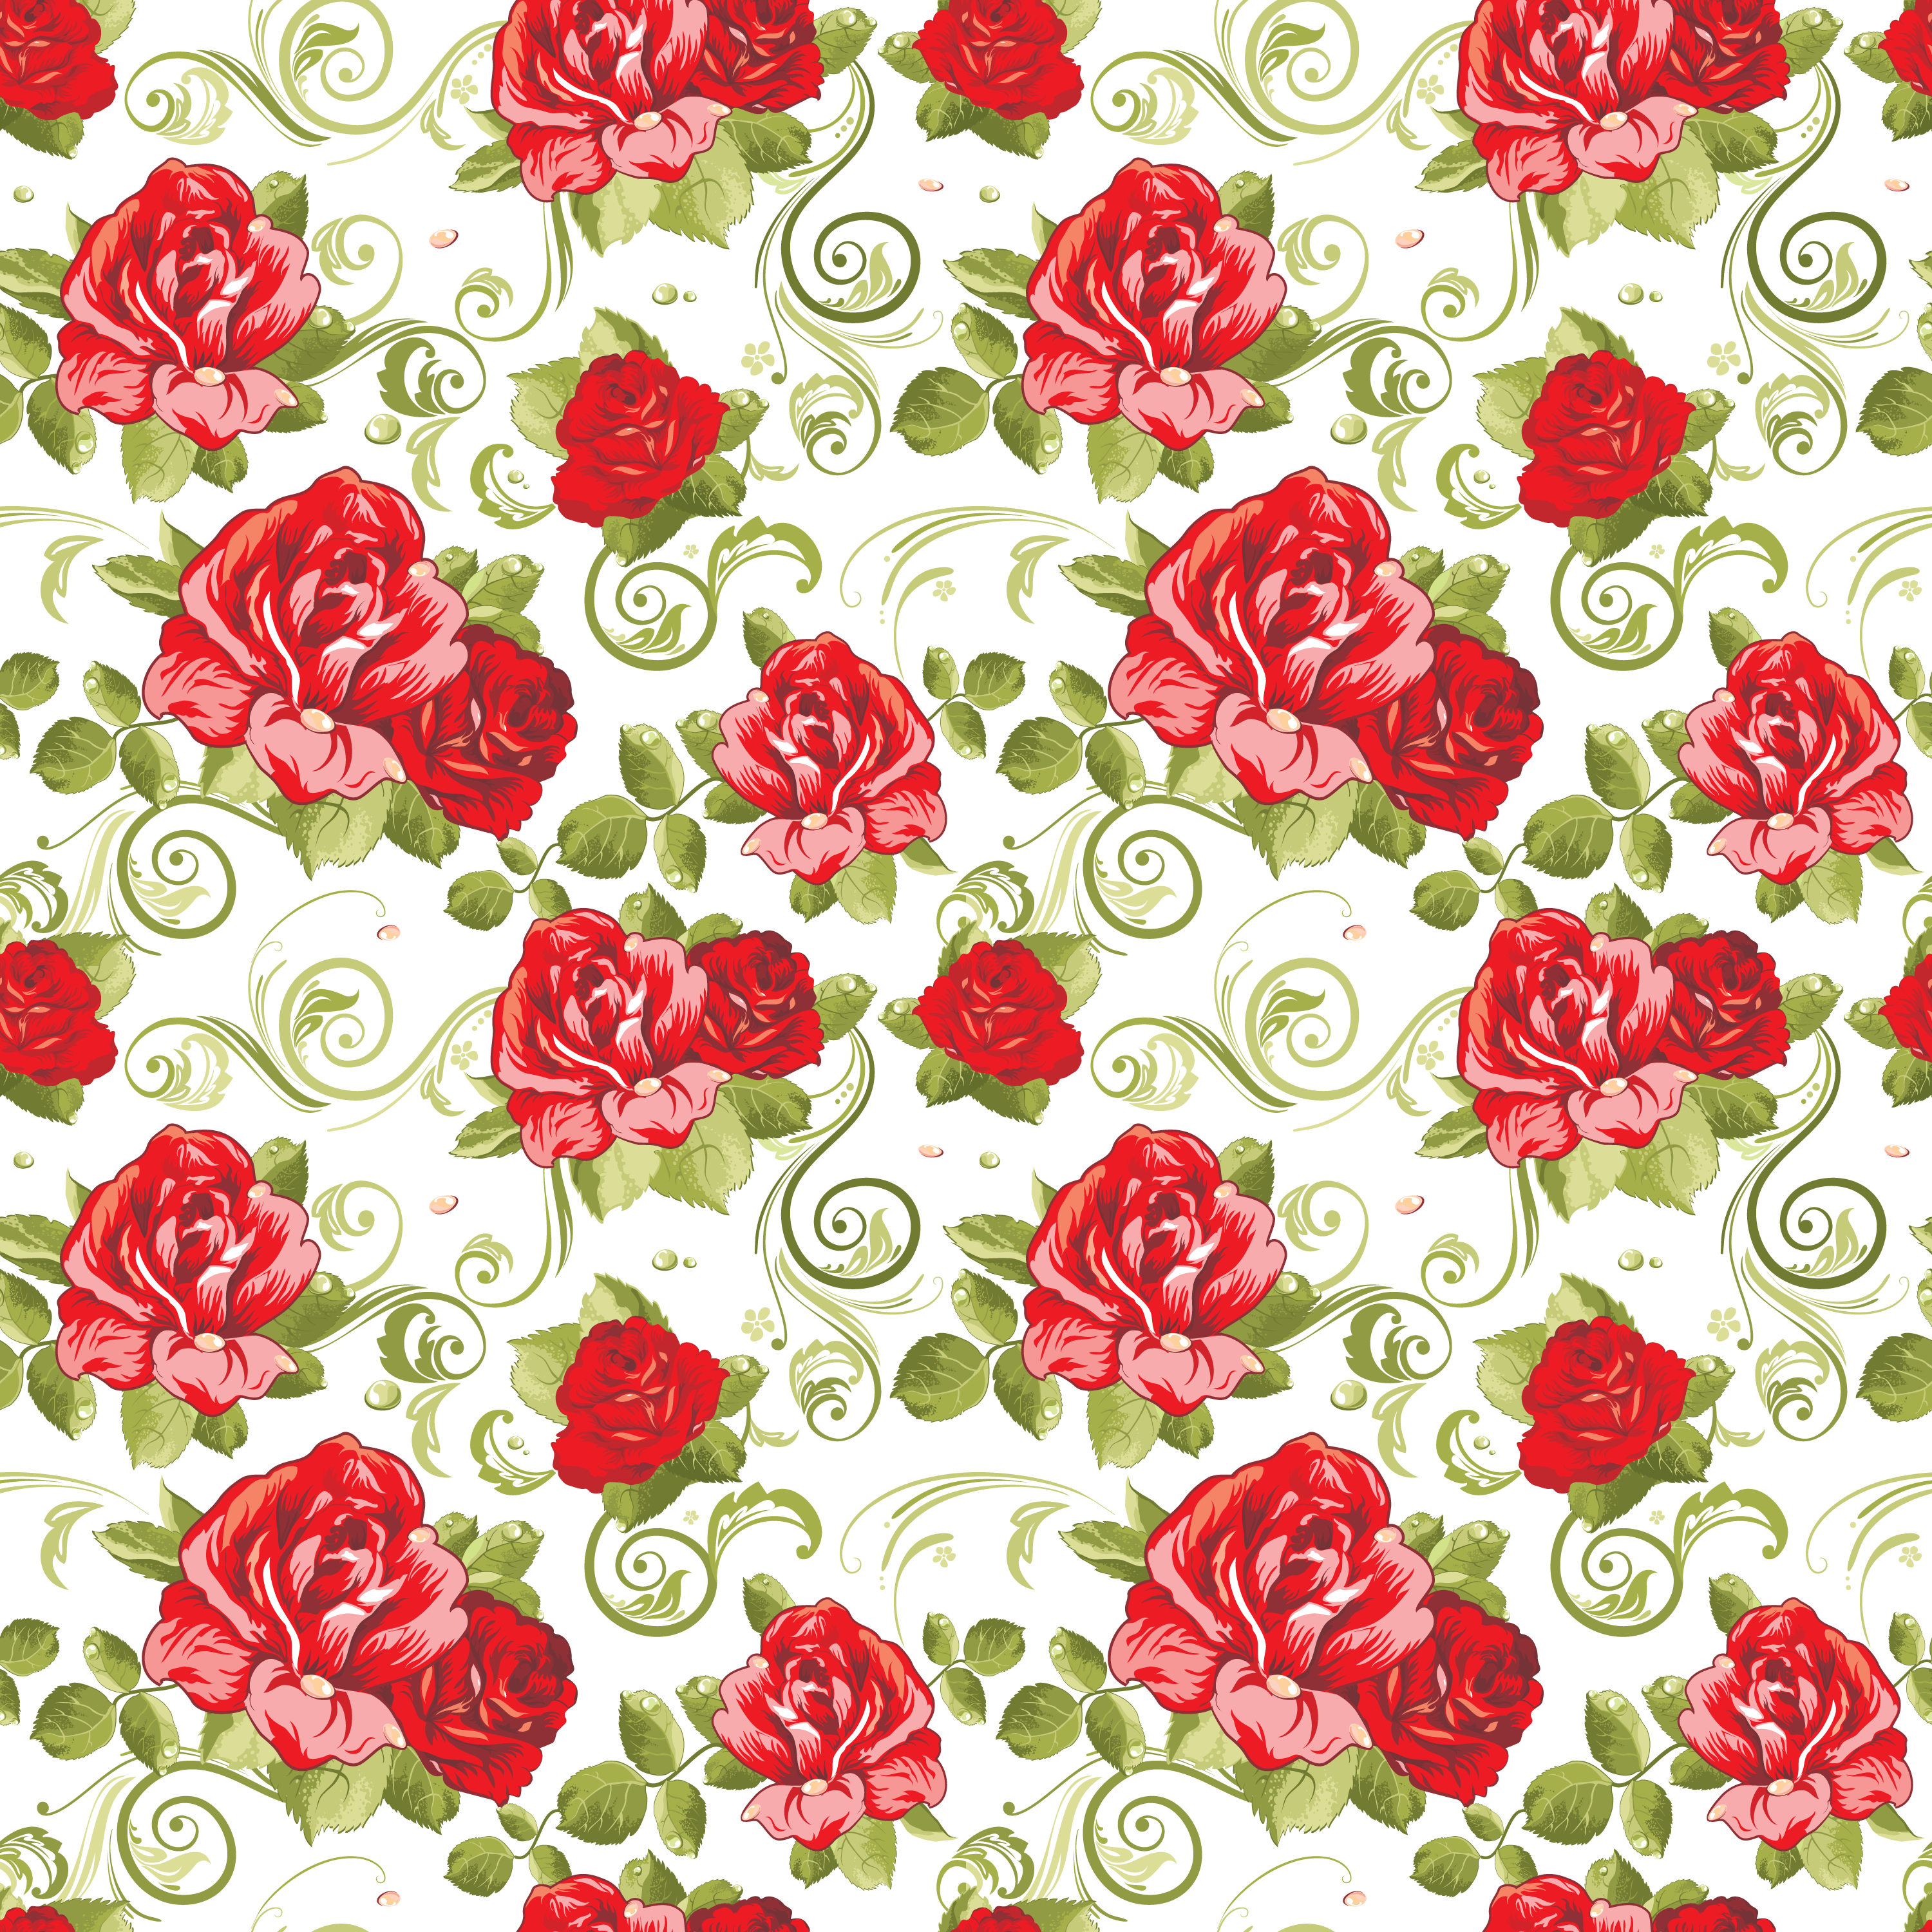 壁紙 背景イラスト 花の模様 柄 パターン No 224 赤バラ 緑葉